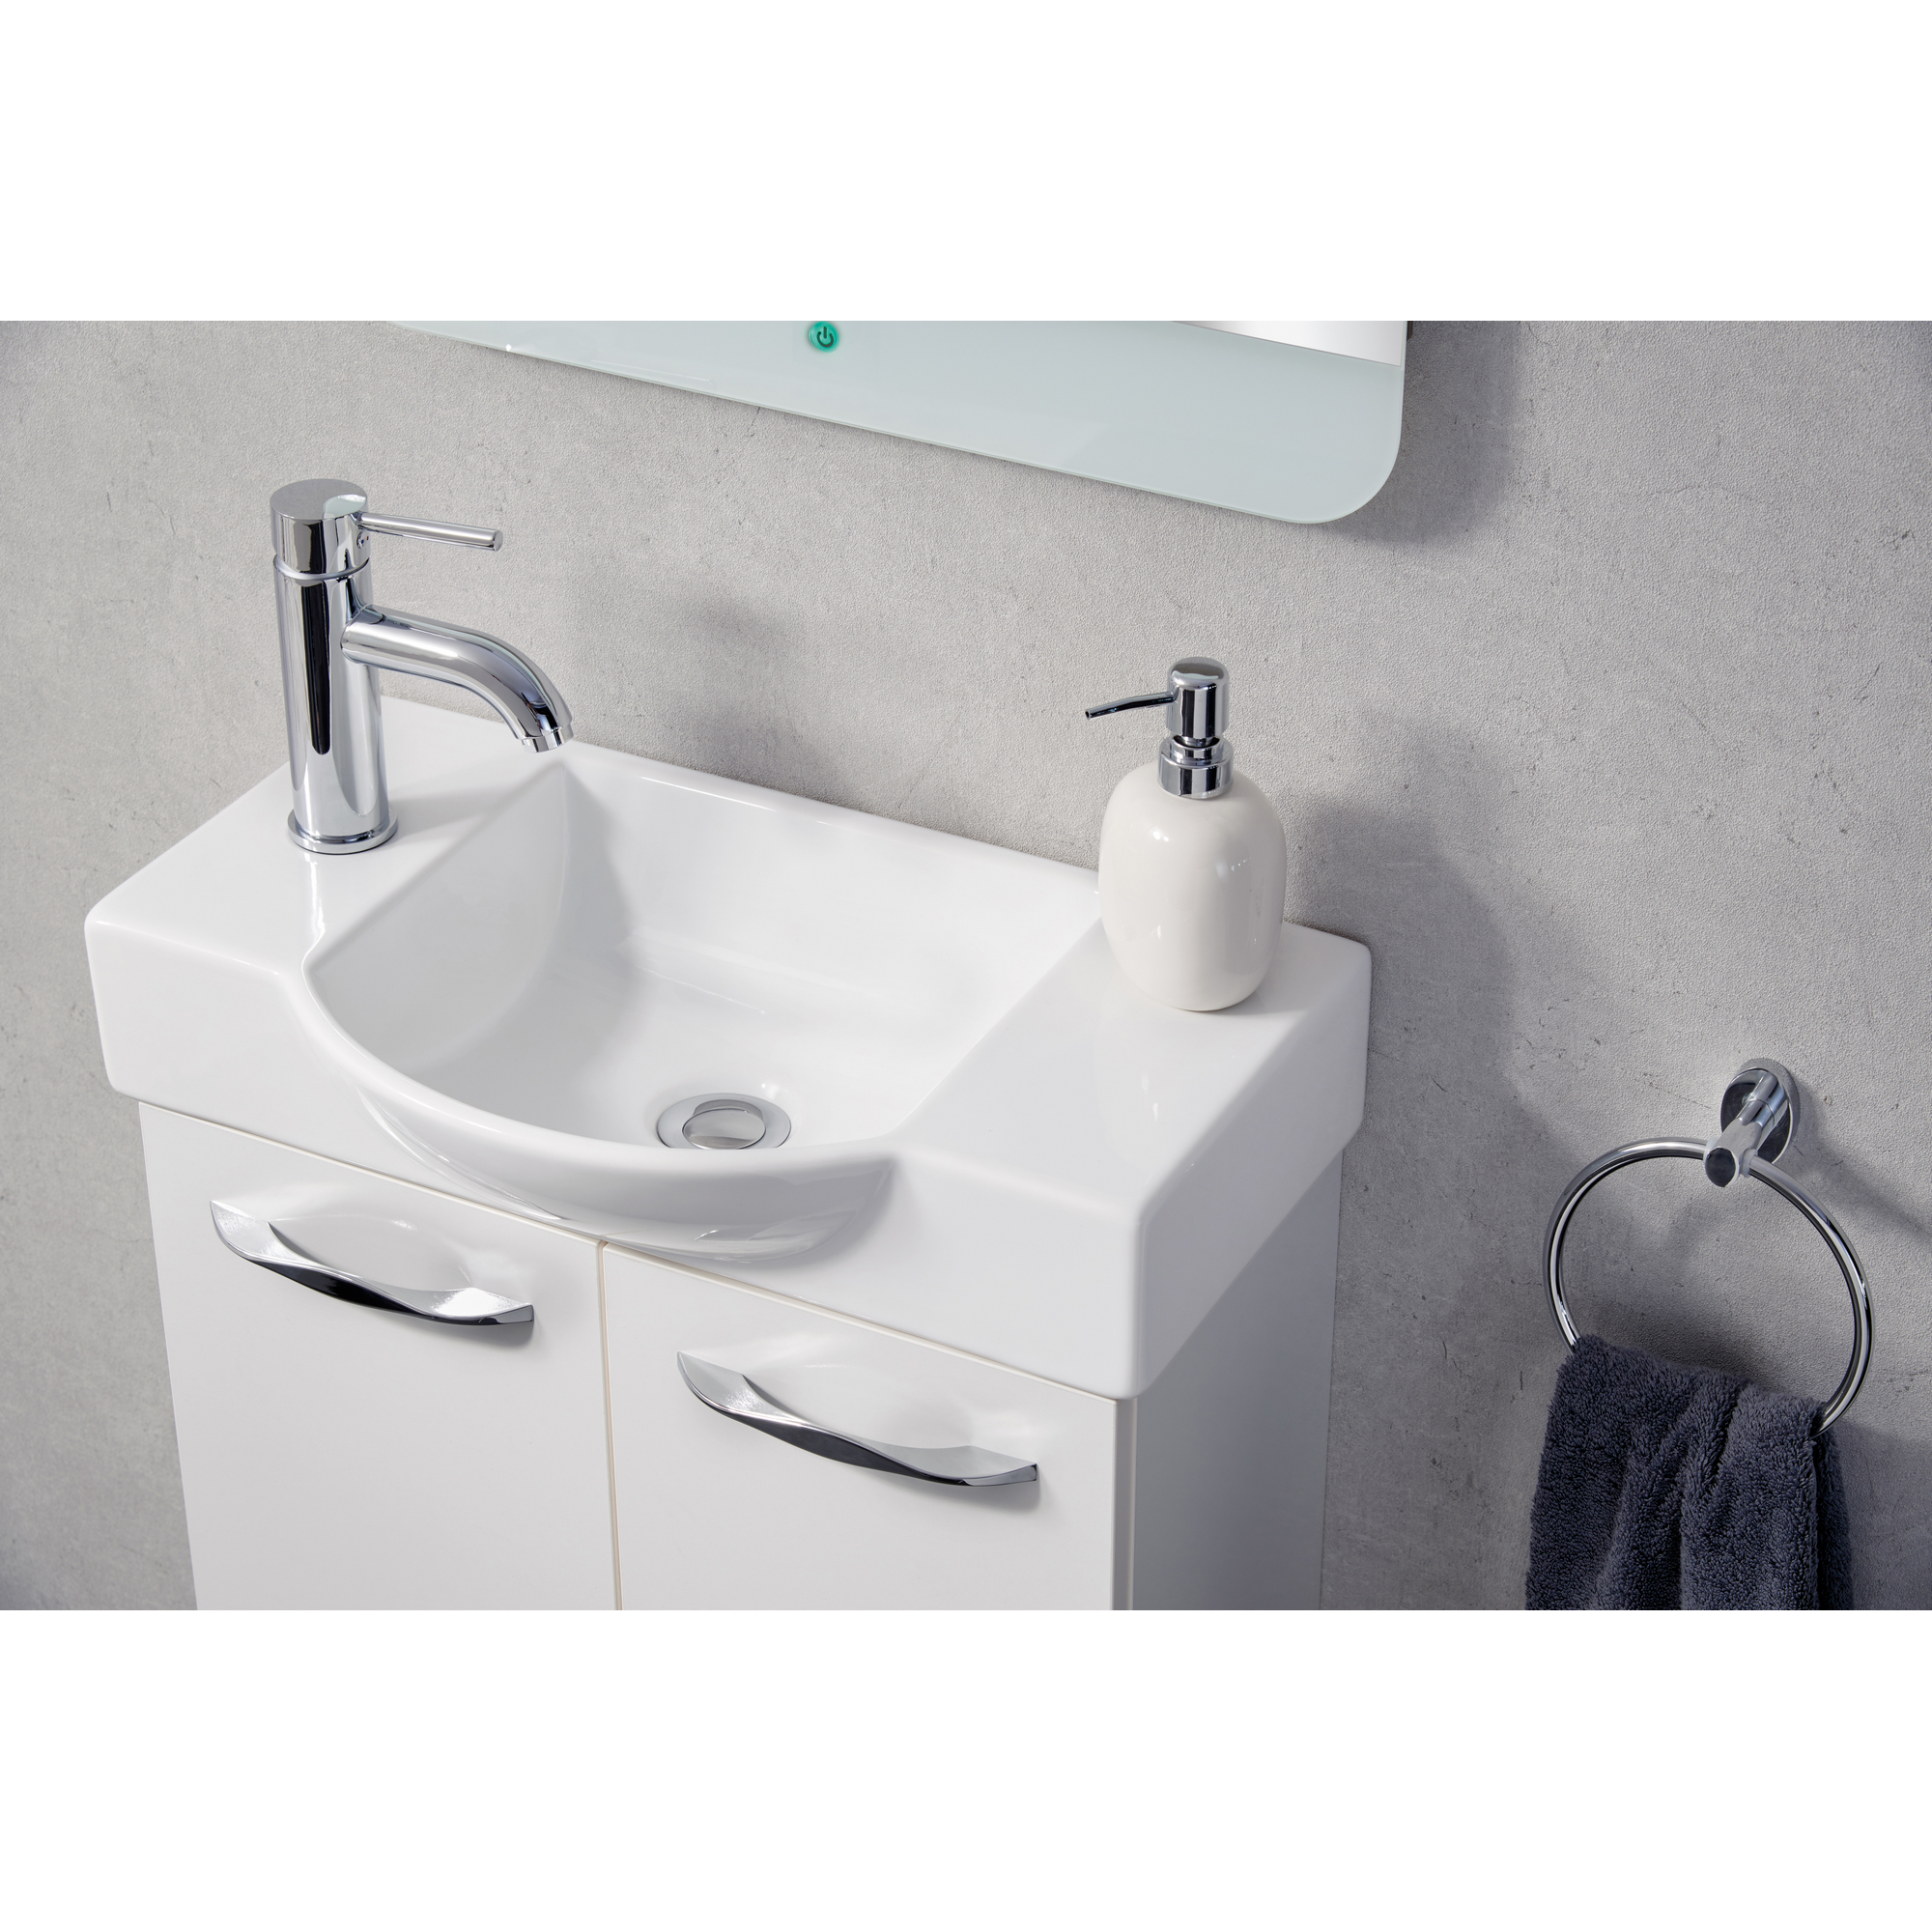 Waschbecken 'SBC' weiß 54,5 x 14,5 x 31,7 cm für Gäste-WC + product picture